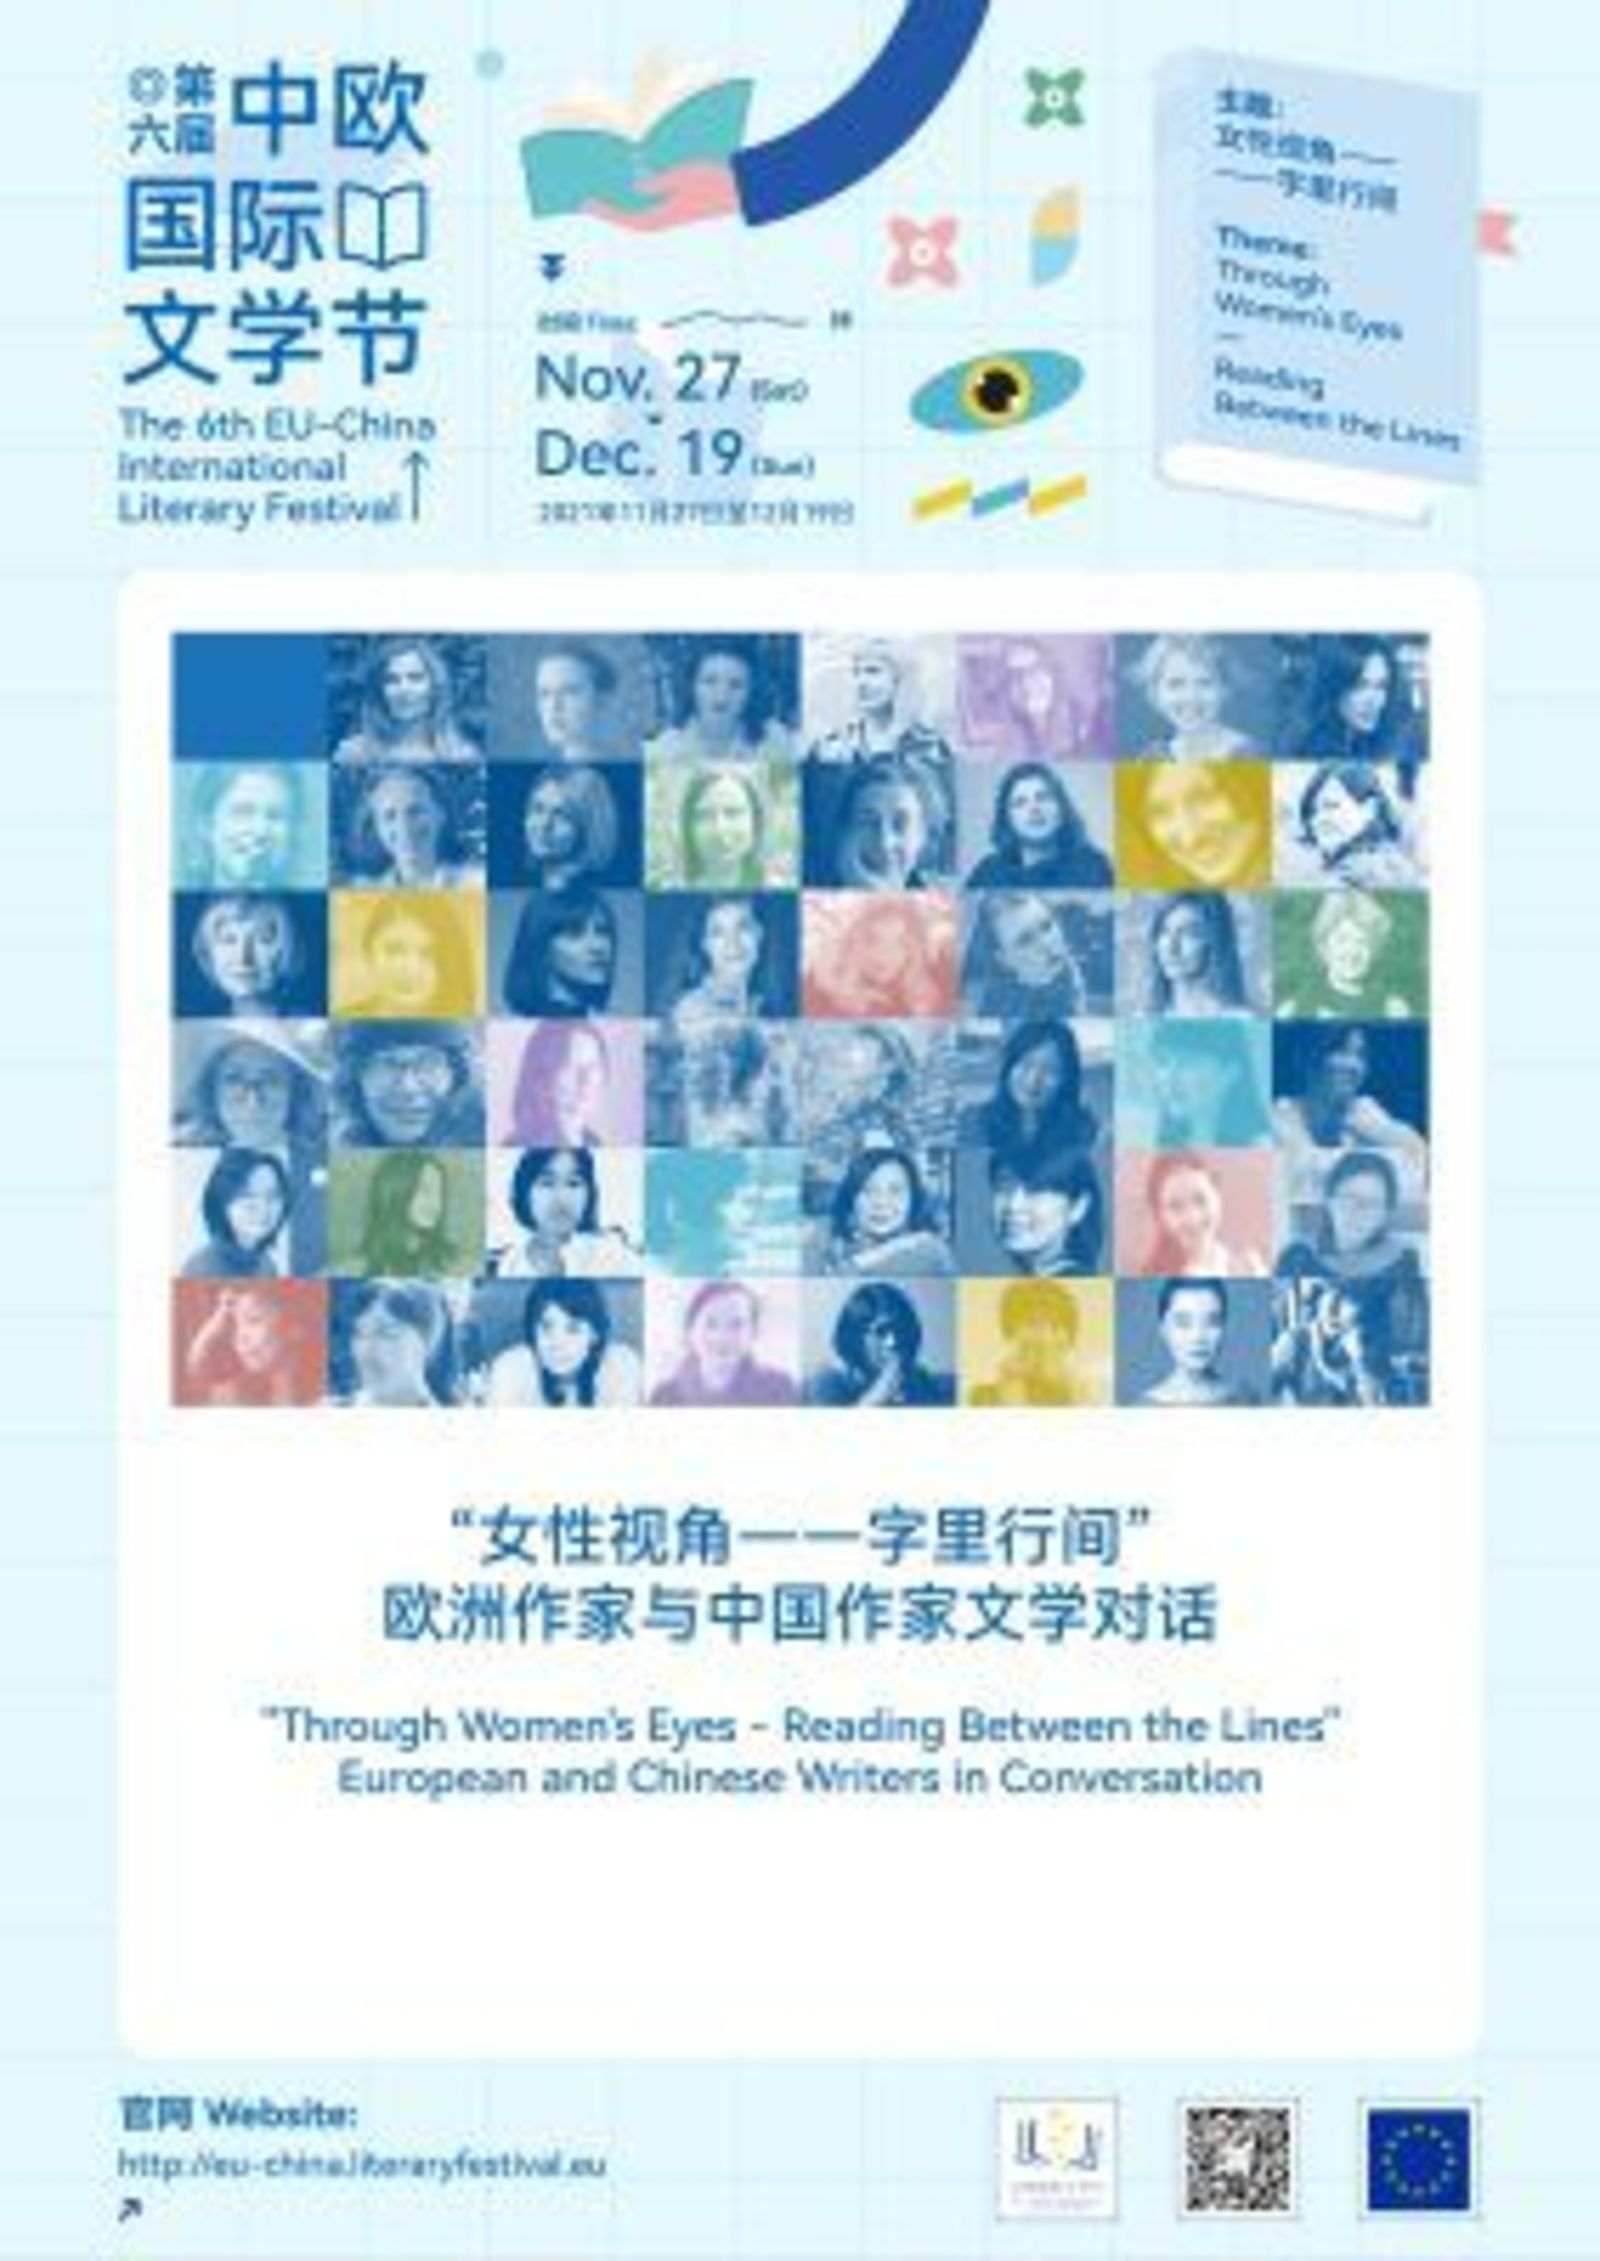 Българско участие в Шестия европейски литературен фестивал, 27 ноември – 19 декември 2021г. в Китай